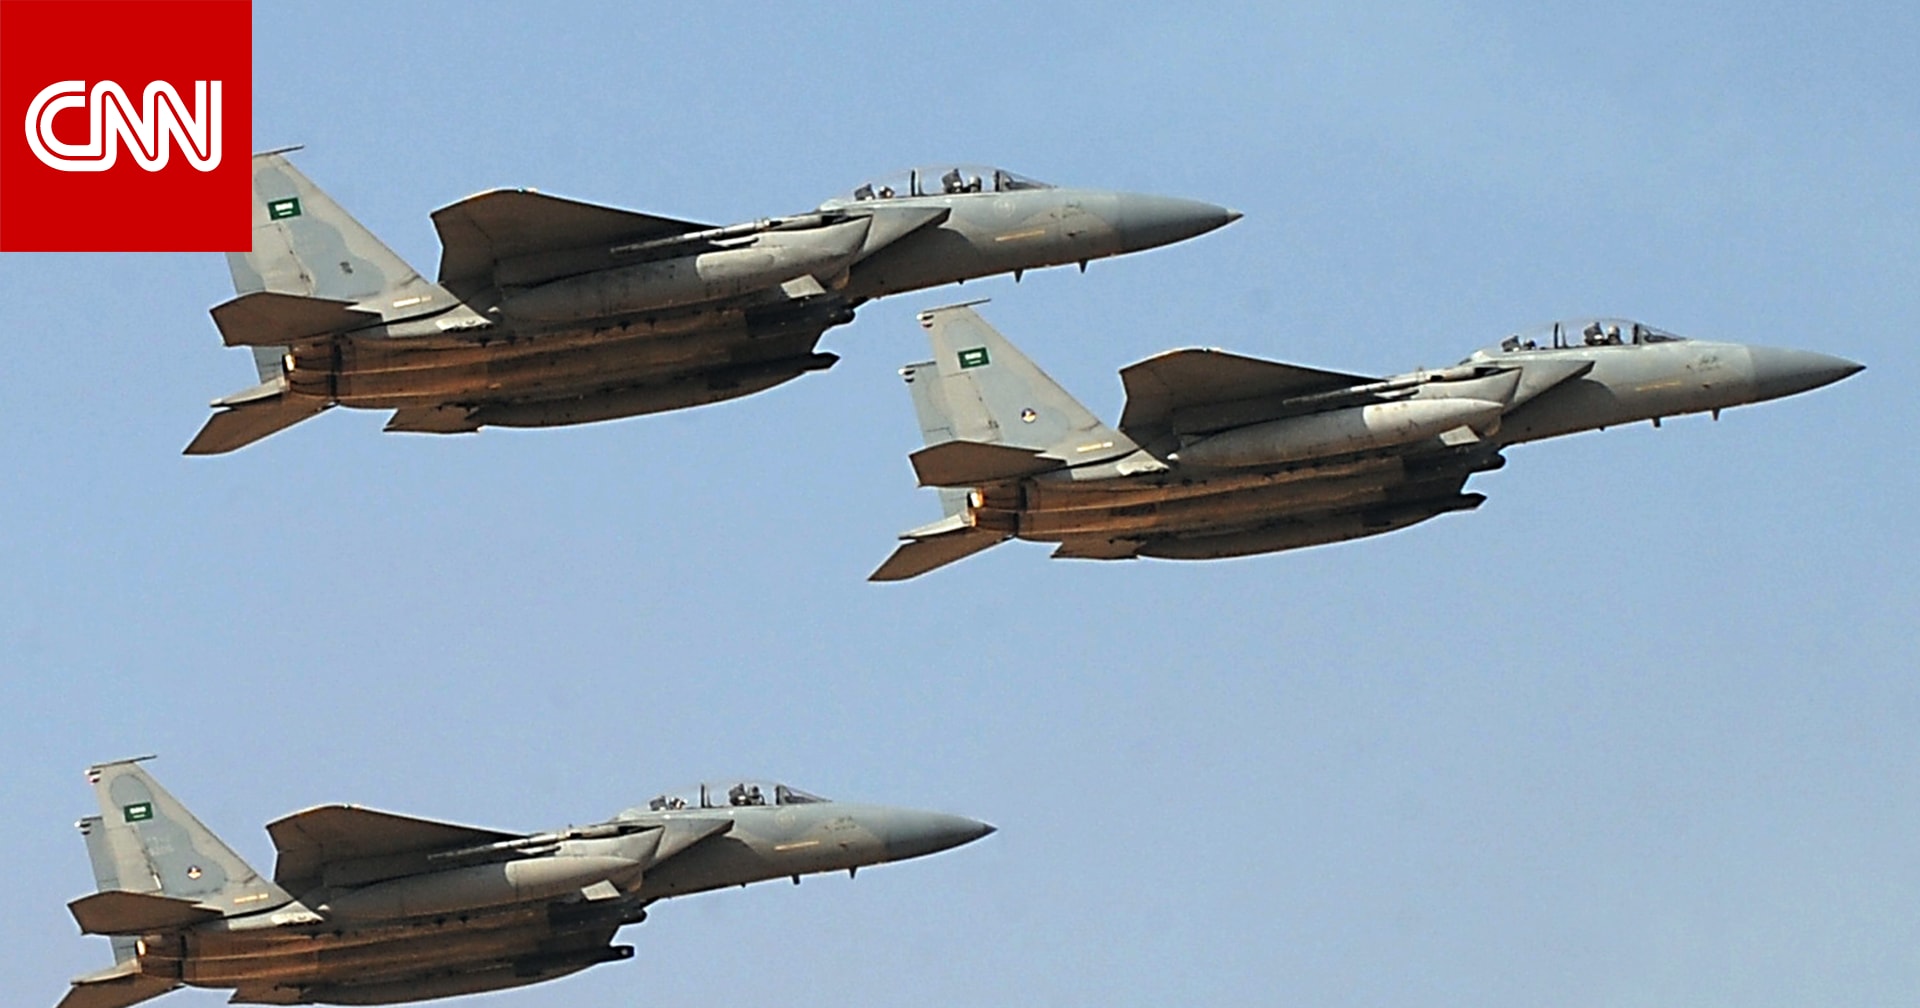 السعودية تستعرض قوتها الجوية في اليوم الوطني 89 - CNN Arabic